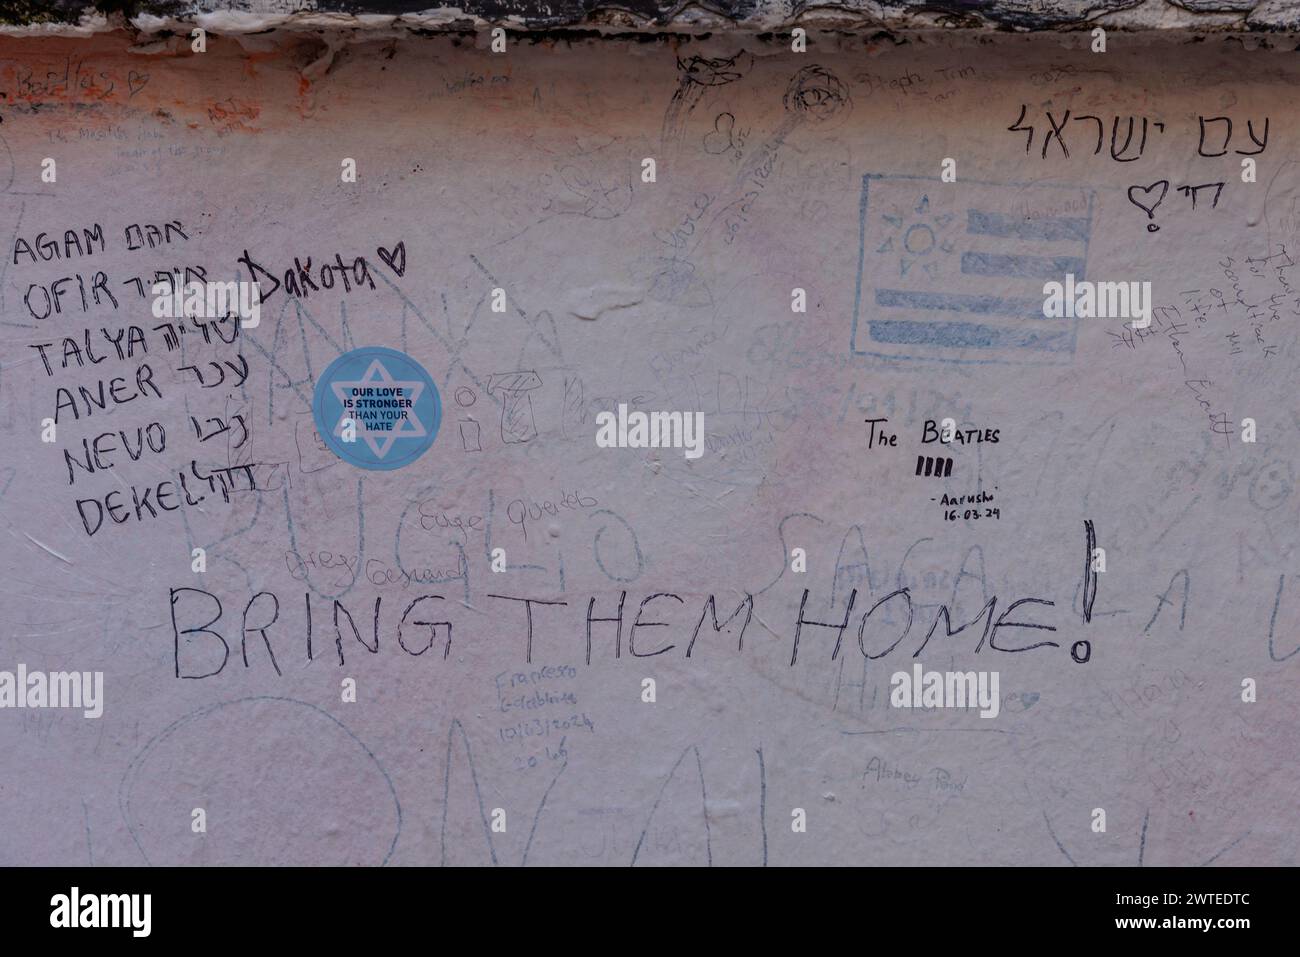 Abbey Road, Londra, Regno Unito. 17 marzo 2024. Un gruppo di studenti delle scuole superiori israeliane, sopravvissuti all’attentato terroristico del 7 ottobre 2023, che hanno visitato Londra nell'ambito di una delegazione organizzata da 7/10 Human Chain Project, scrivono messaggi sul muro dello studio Abbey Road per i loro 7 amici e vicini, ancora tenuti prigionieri a Gaza da quando sono stati portati via dalle loro case durante l'attacco palestinese in Israele 163 giorni fa. Il gruppo ha visitato gli studenti a Londra per condividere le loro storie e le terribili esperienze del massacro. Foto di Amanda Rose/Alamy Live News Foto Stock